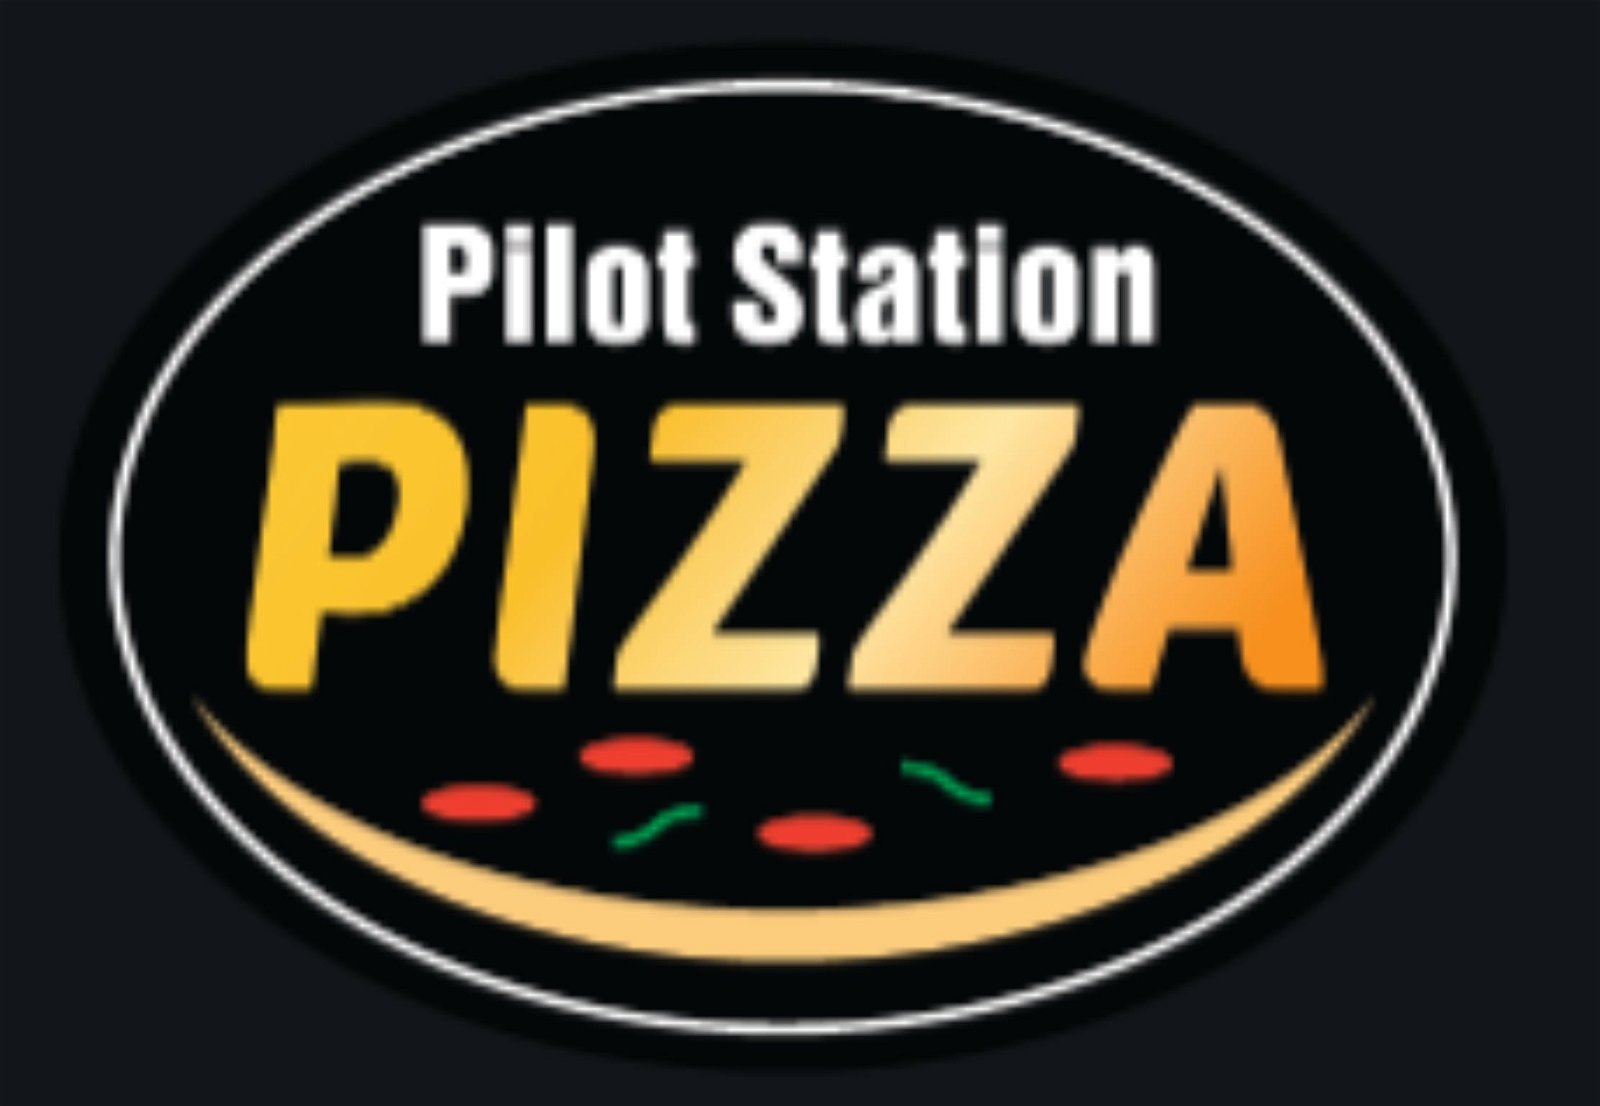 Pilot Station Pizza - Pubs Sydney